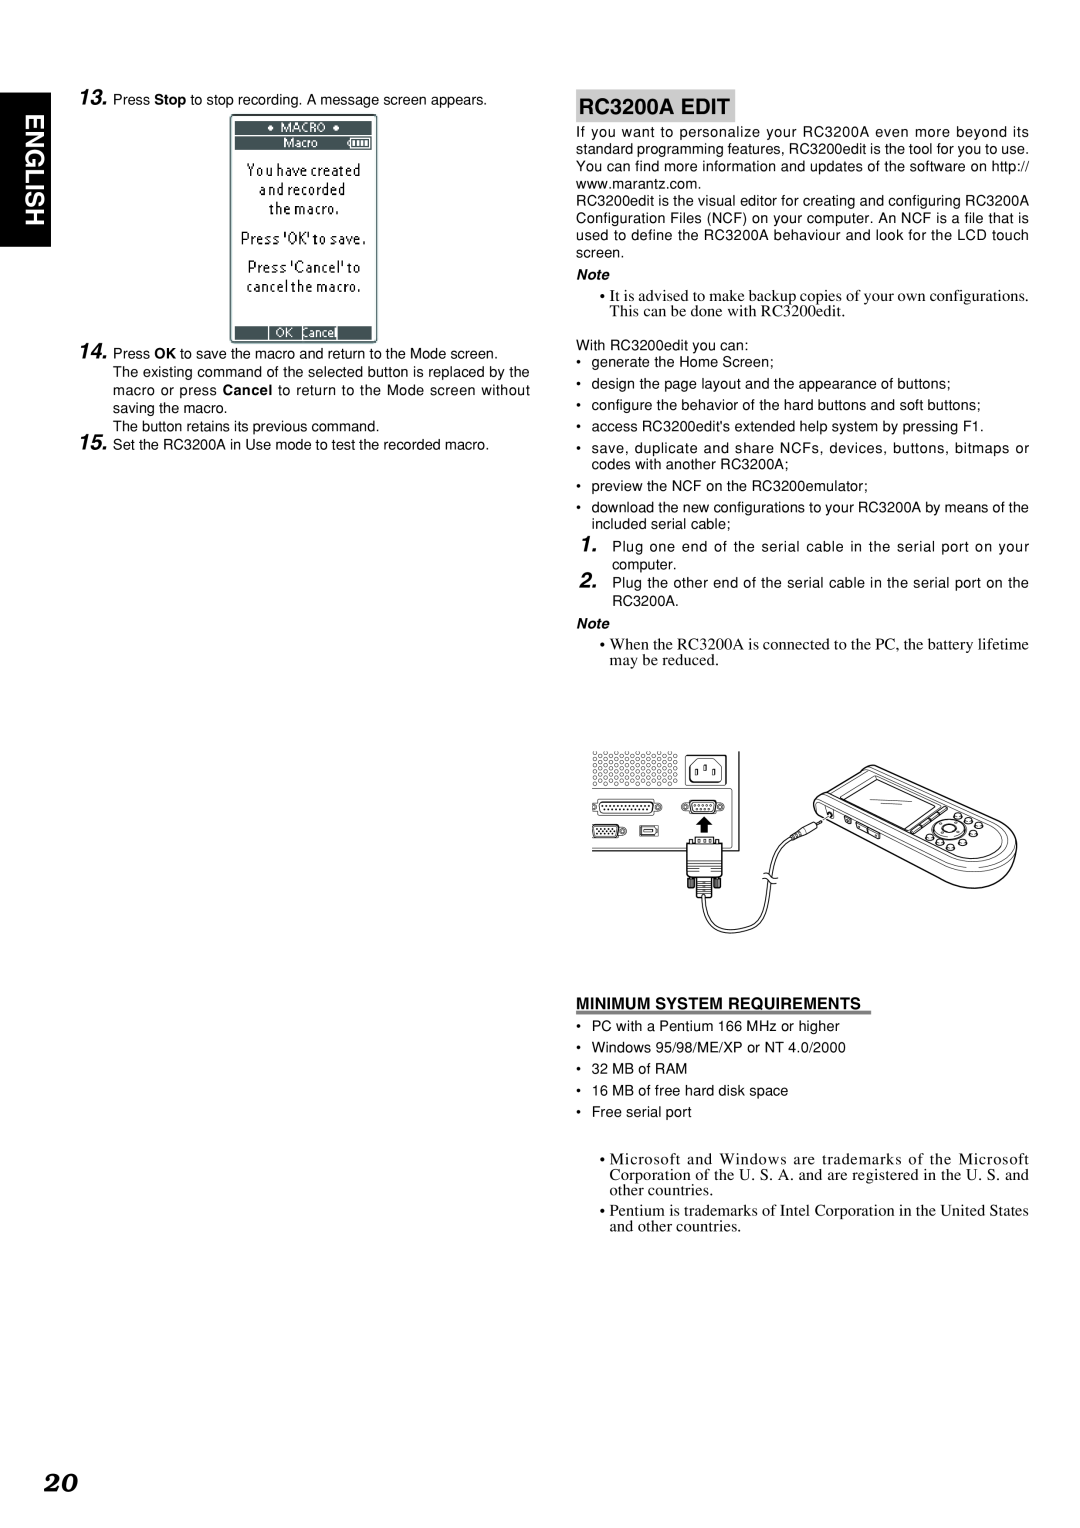 Marantz SR9200 manual English, RC3200A EDIT, Minimum System Requirements 